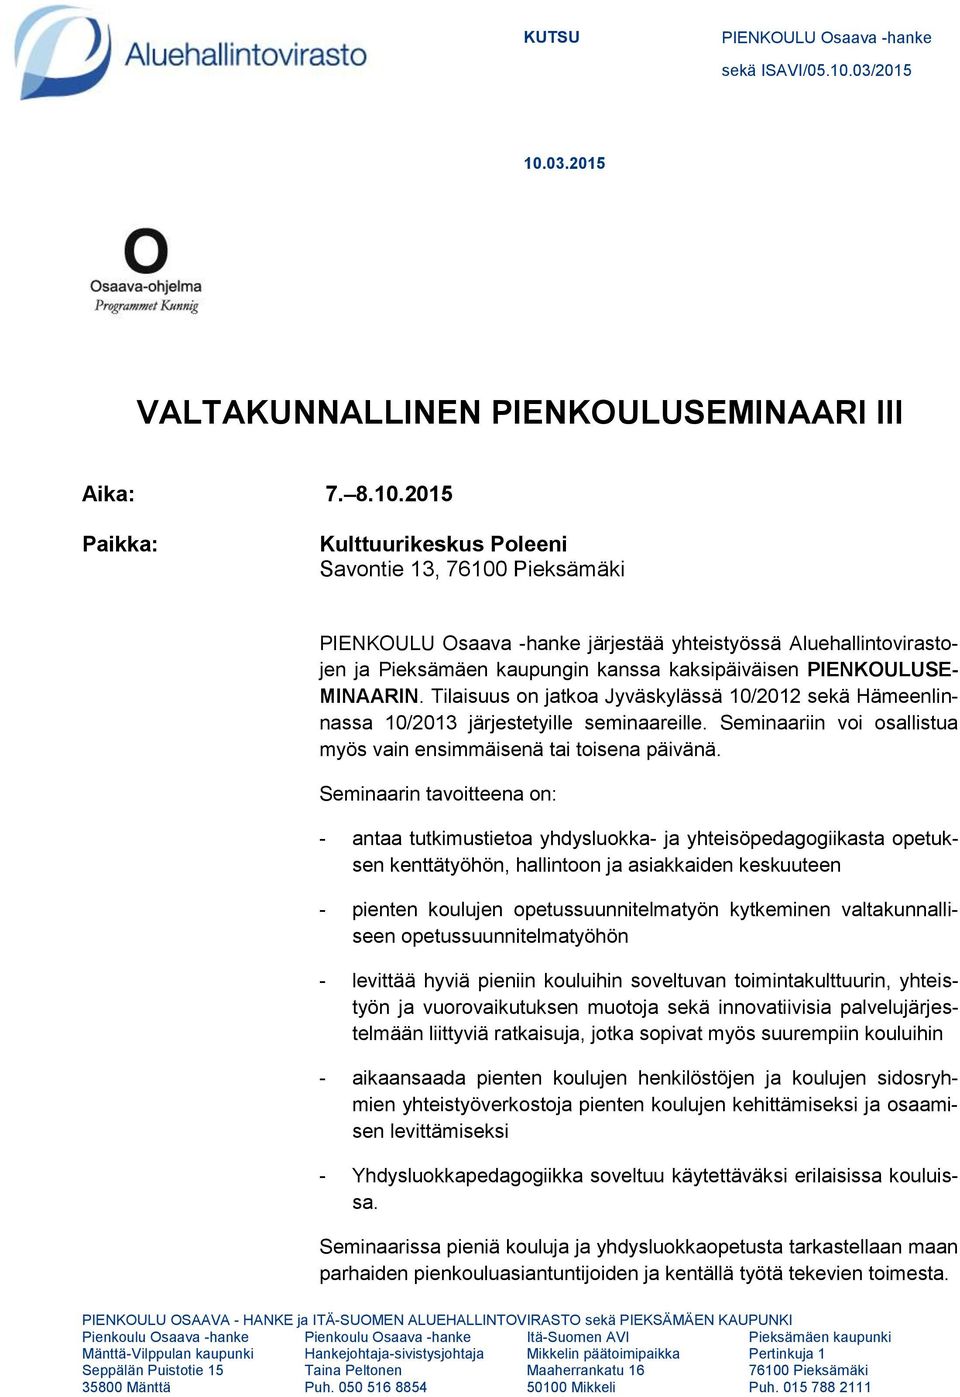 Tilaisuus on jatkoa Jyväskylässä 10/2012 sekä Hämeenlinnassa 10/2013 järjestetyille seminaareille. Seminaariin voi osallistua myös vain ensimmäisenä tai toisena päivänä.